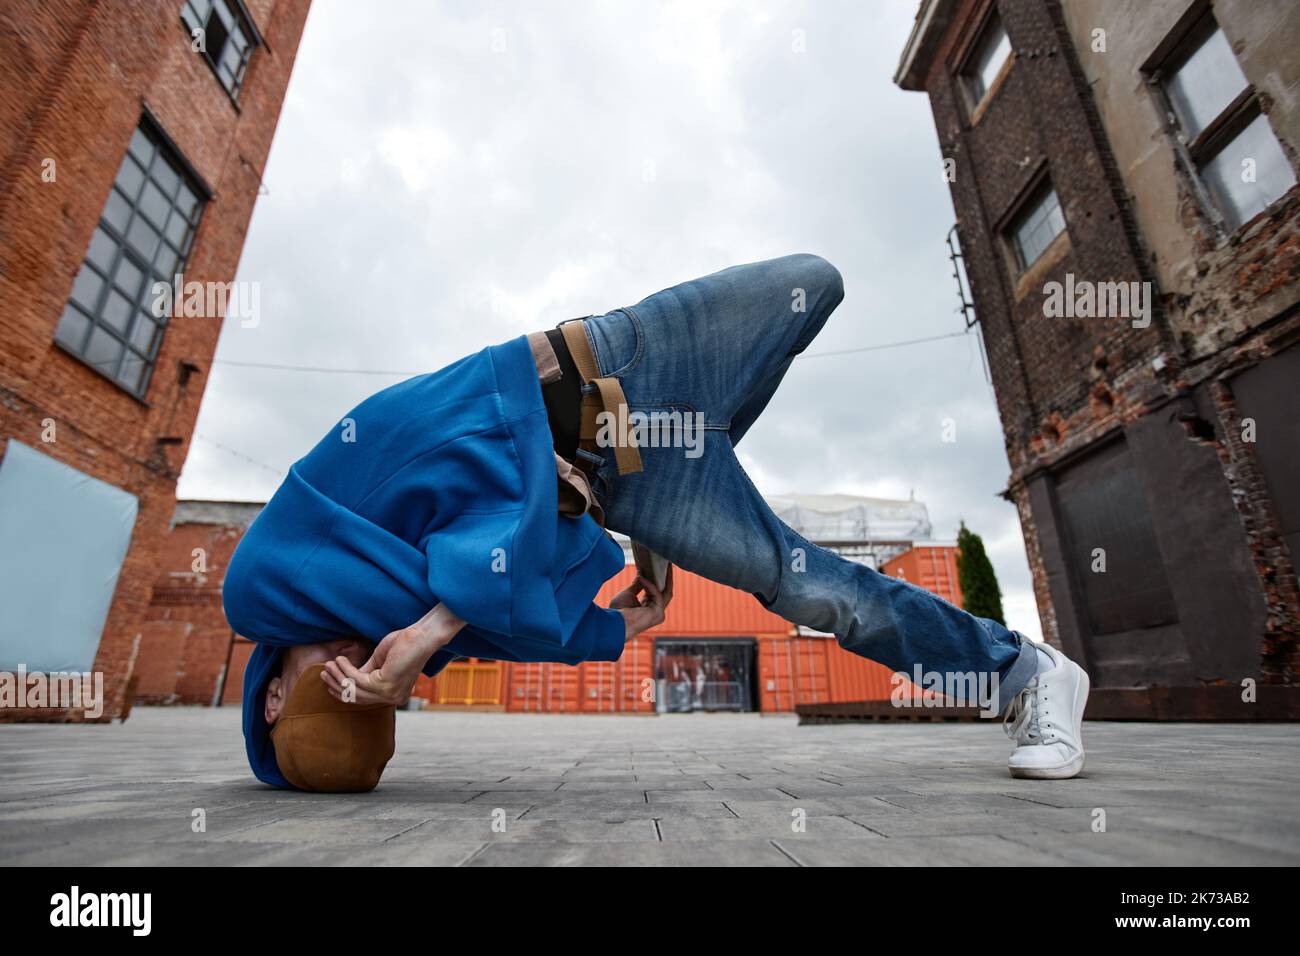 Ganzkörperaufnahme eines jungen Mannes, der in einer urbanen Fabrik im Freien Breakdance-Pose macht und sein Gesicht versteckt Stockfoto